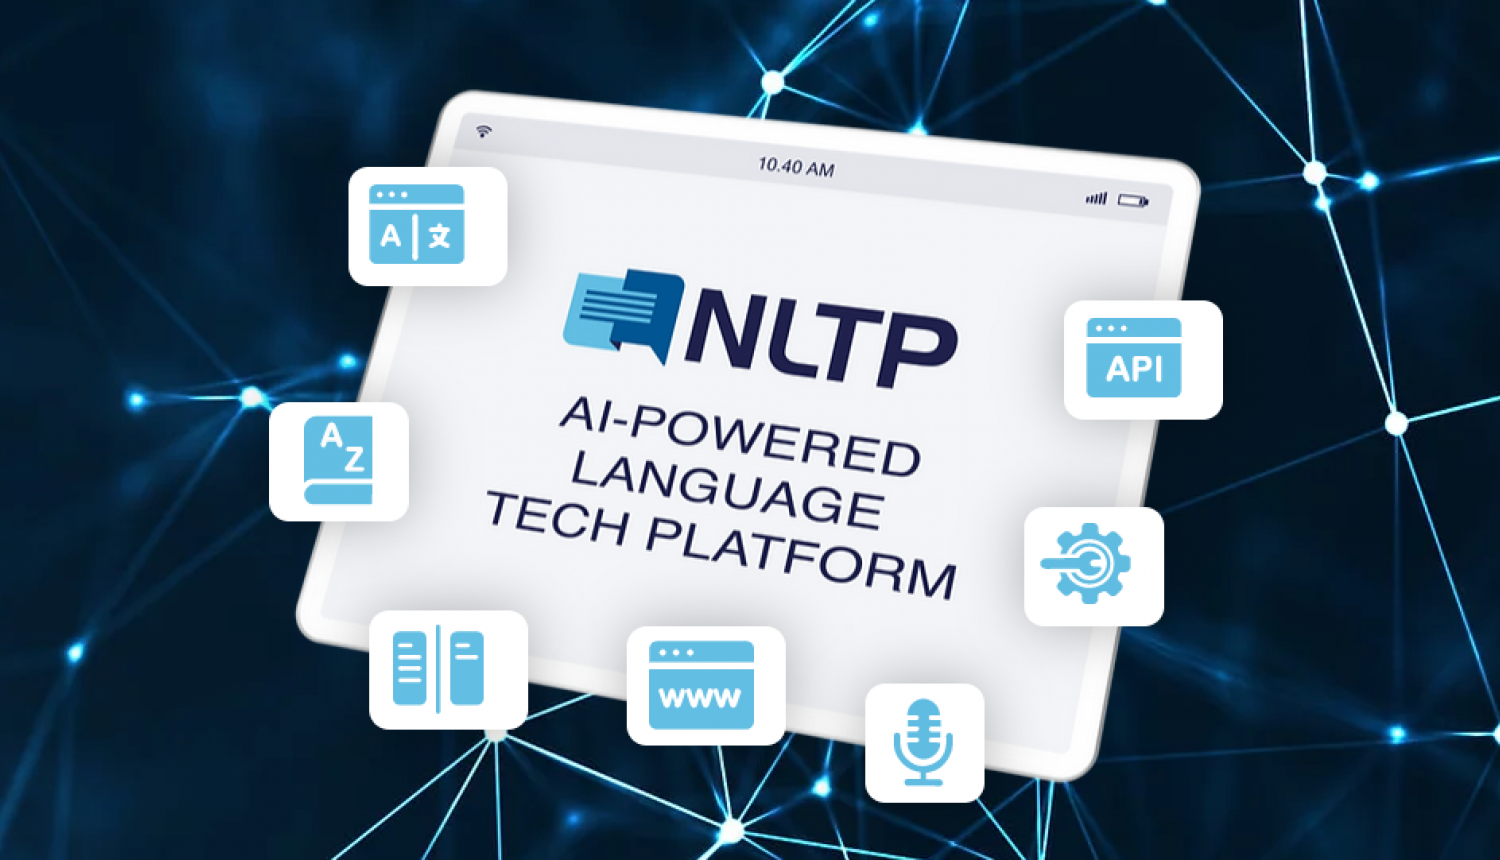 Starpvalstu projekta NLTP (National Language Technology Platform /Nacionālā valodas tehnoloģiju platforma) vizuālais materiāls